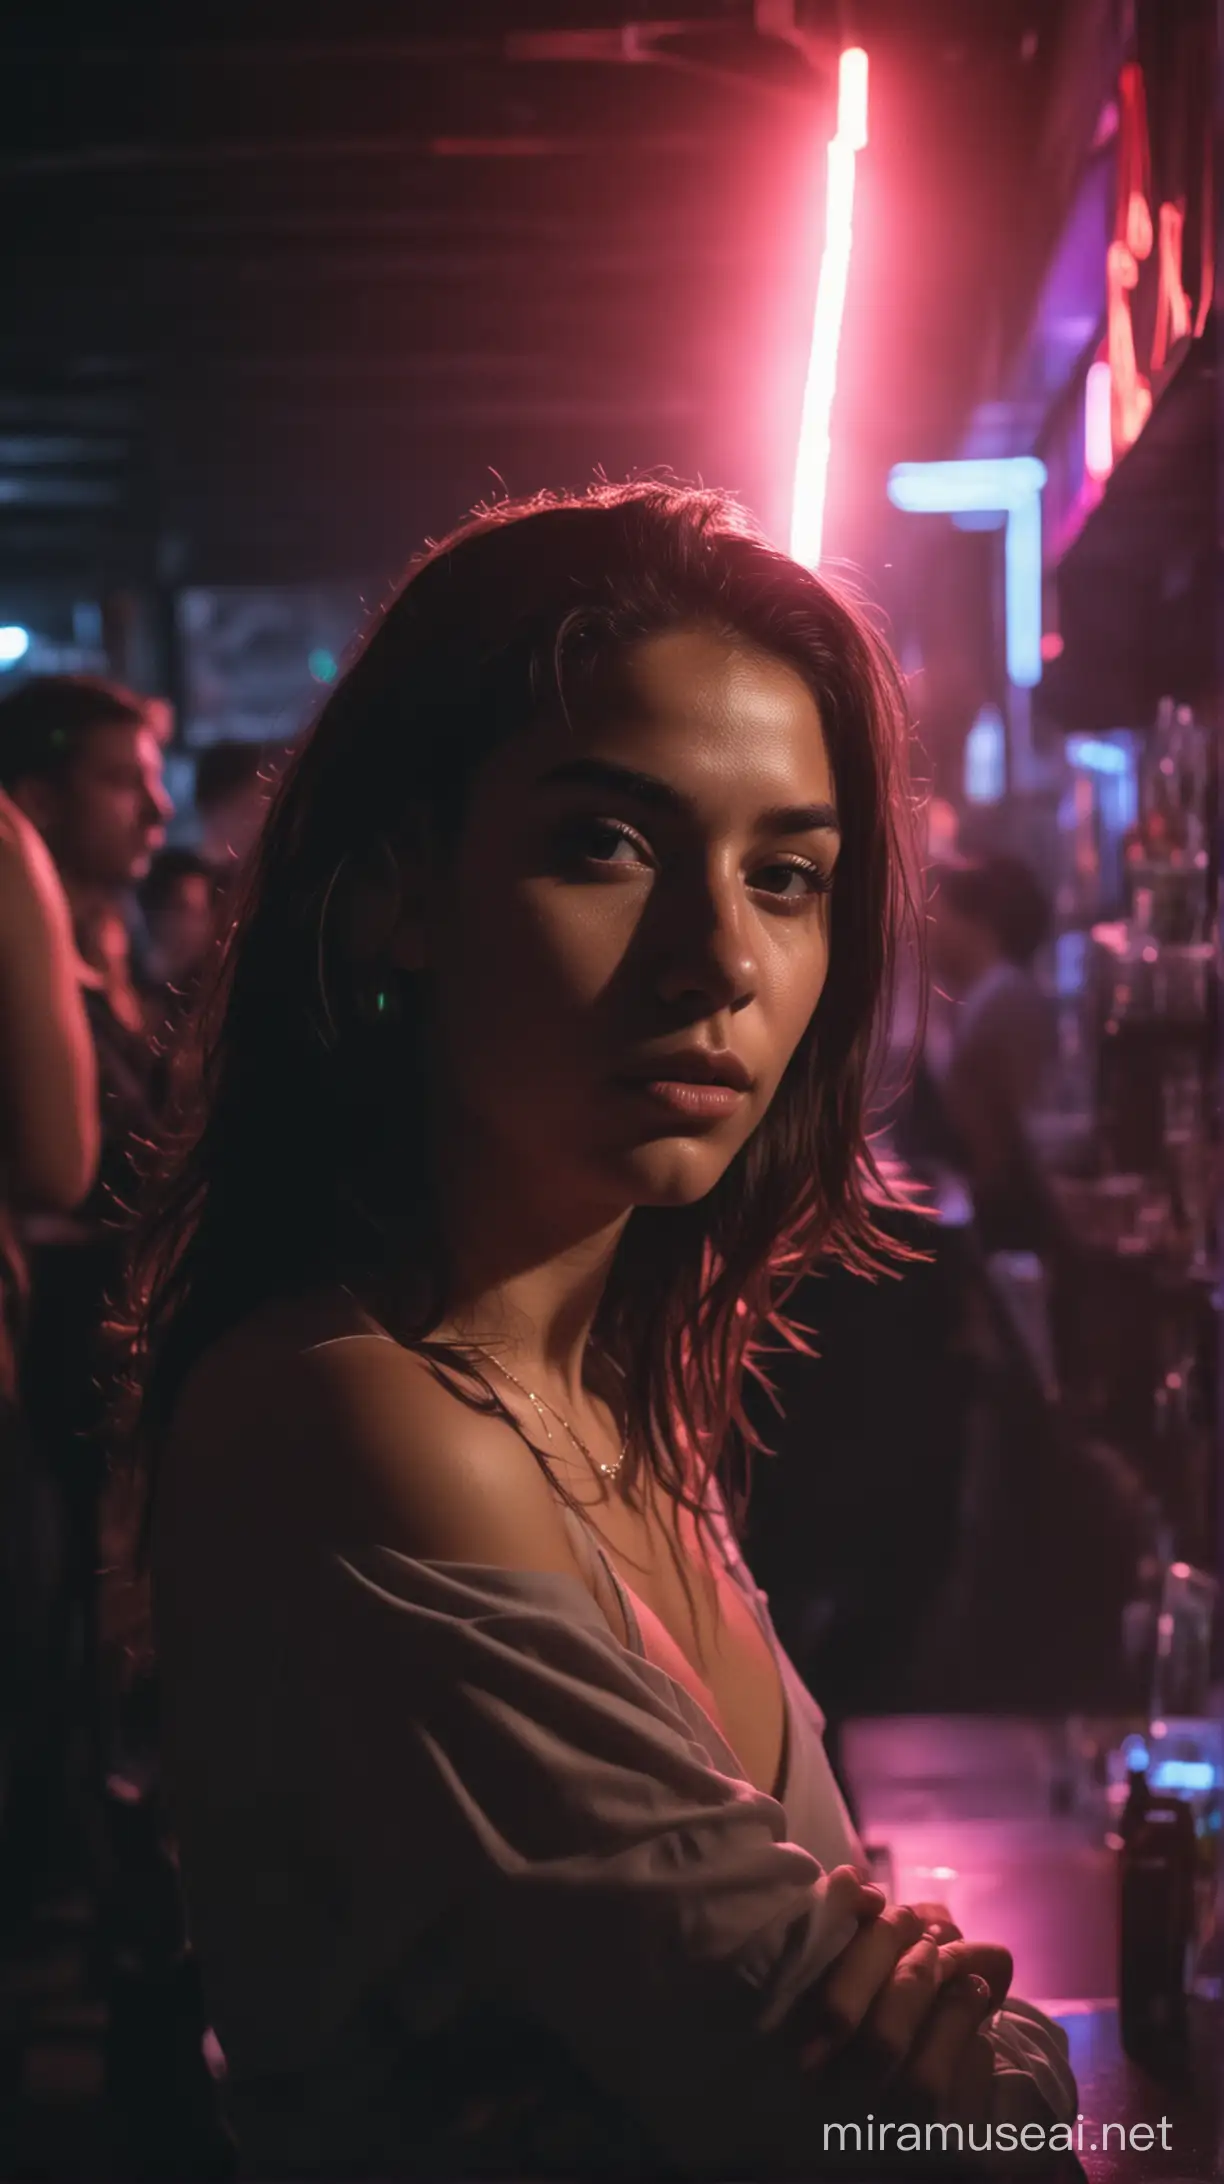 mujer joven de origen latino en un bar a oscuras con mucha gente a su alrededor  haciendole contraste a traves de la iluminacion proveniente de un neon celeste 